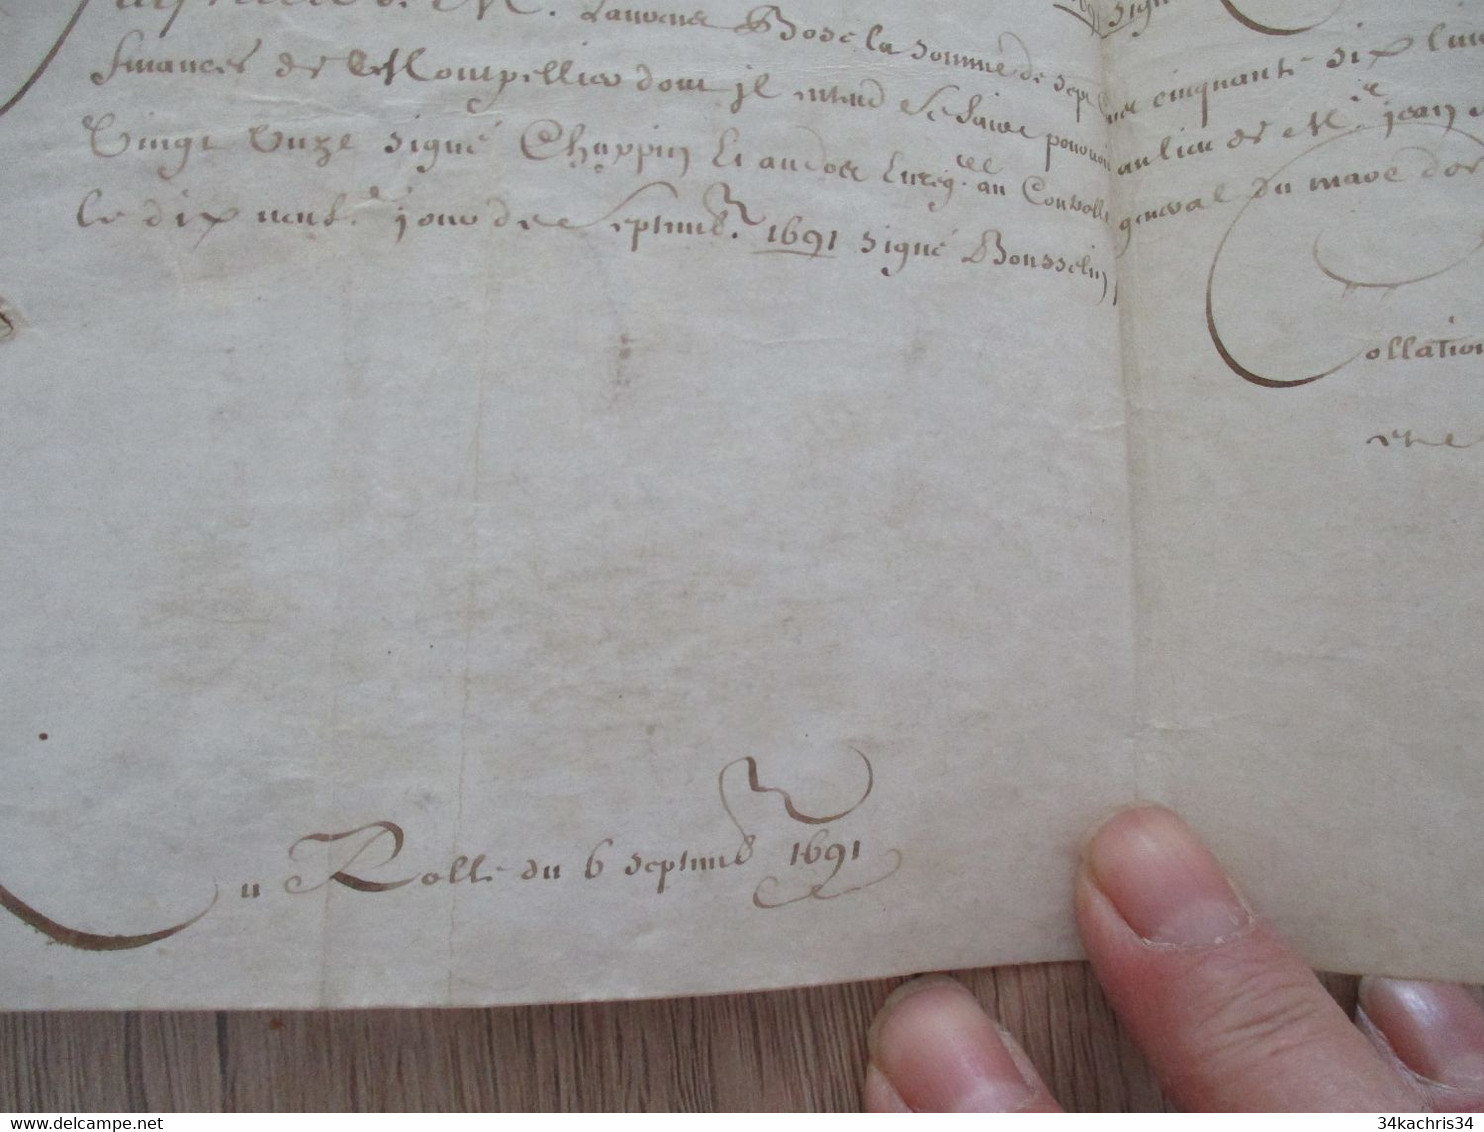 1691 Pièce signée sur velin Gamarze Fillipeaux Bousselin X 3 reçu par La Roche